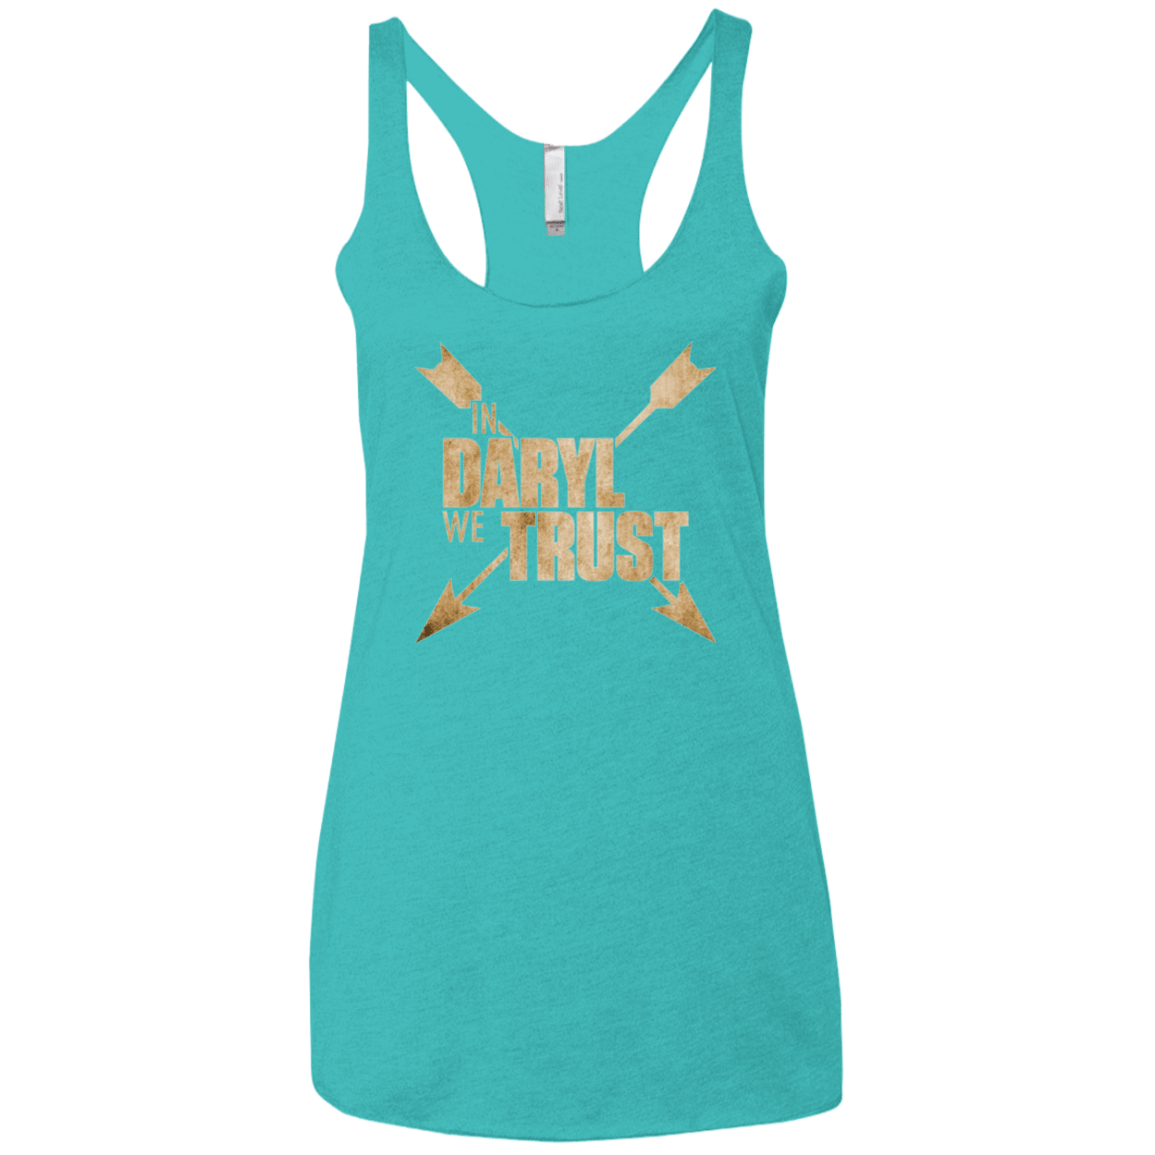 T-Shirts Tahiti Blue / X-Small In Daryl We Trust Women's Triblend Racerback Tank